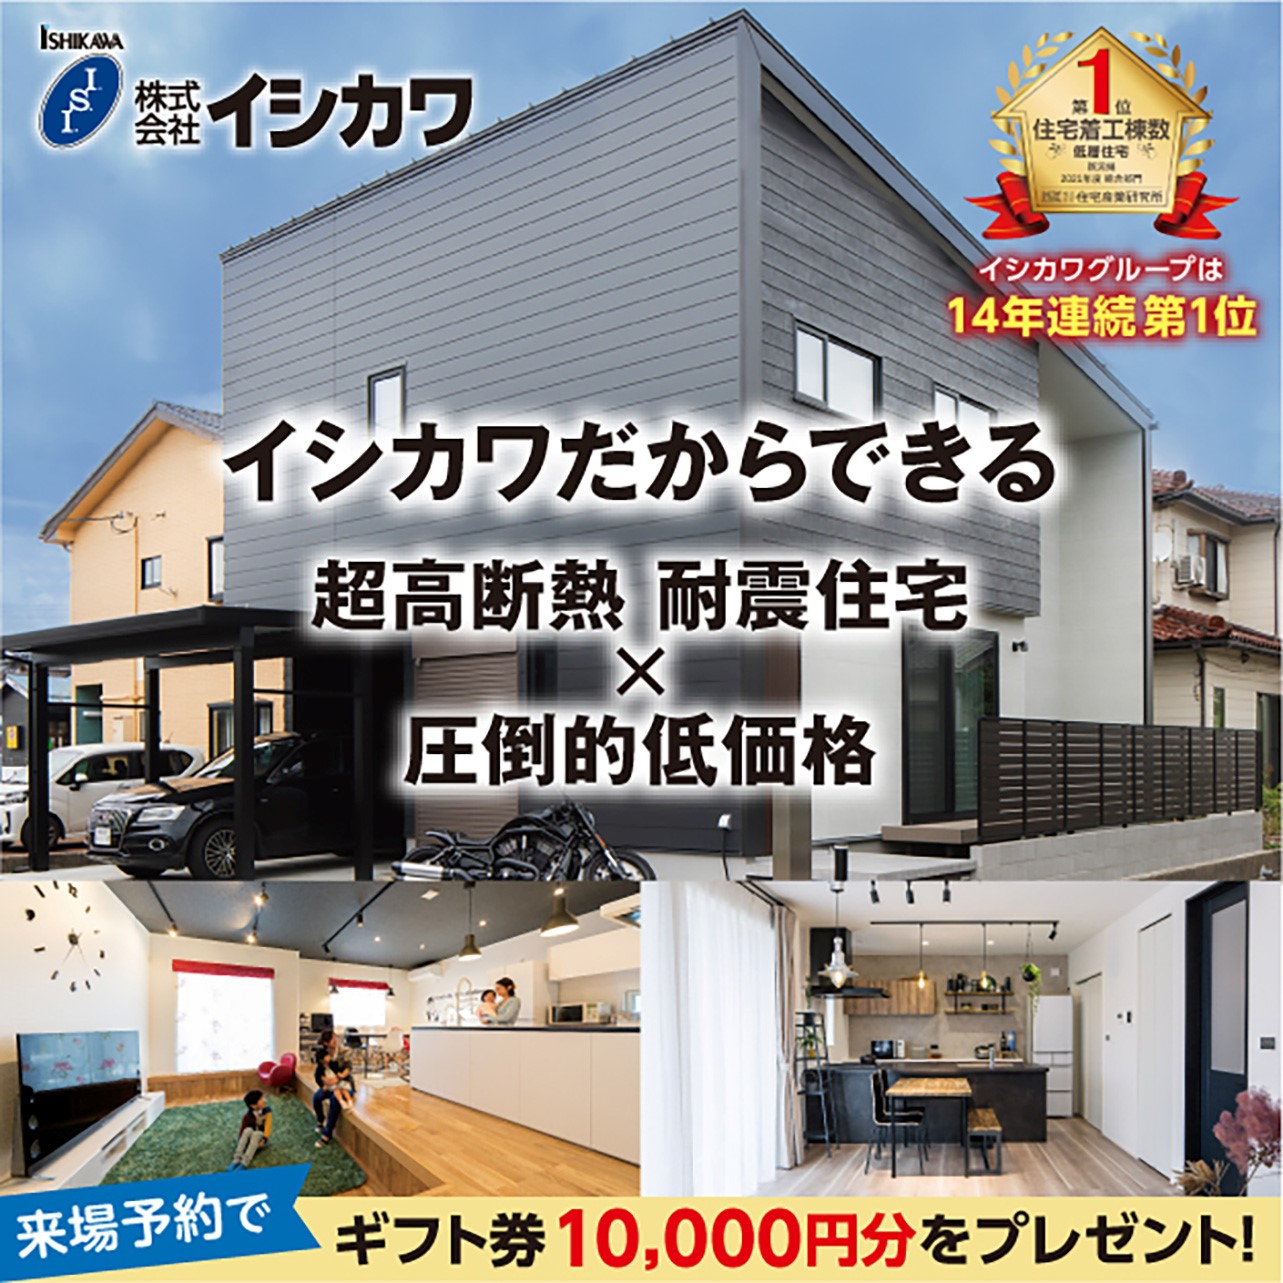 【糸魚川市】初めての住宅相談会開催・予約制のイメージ画像